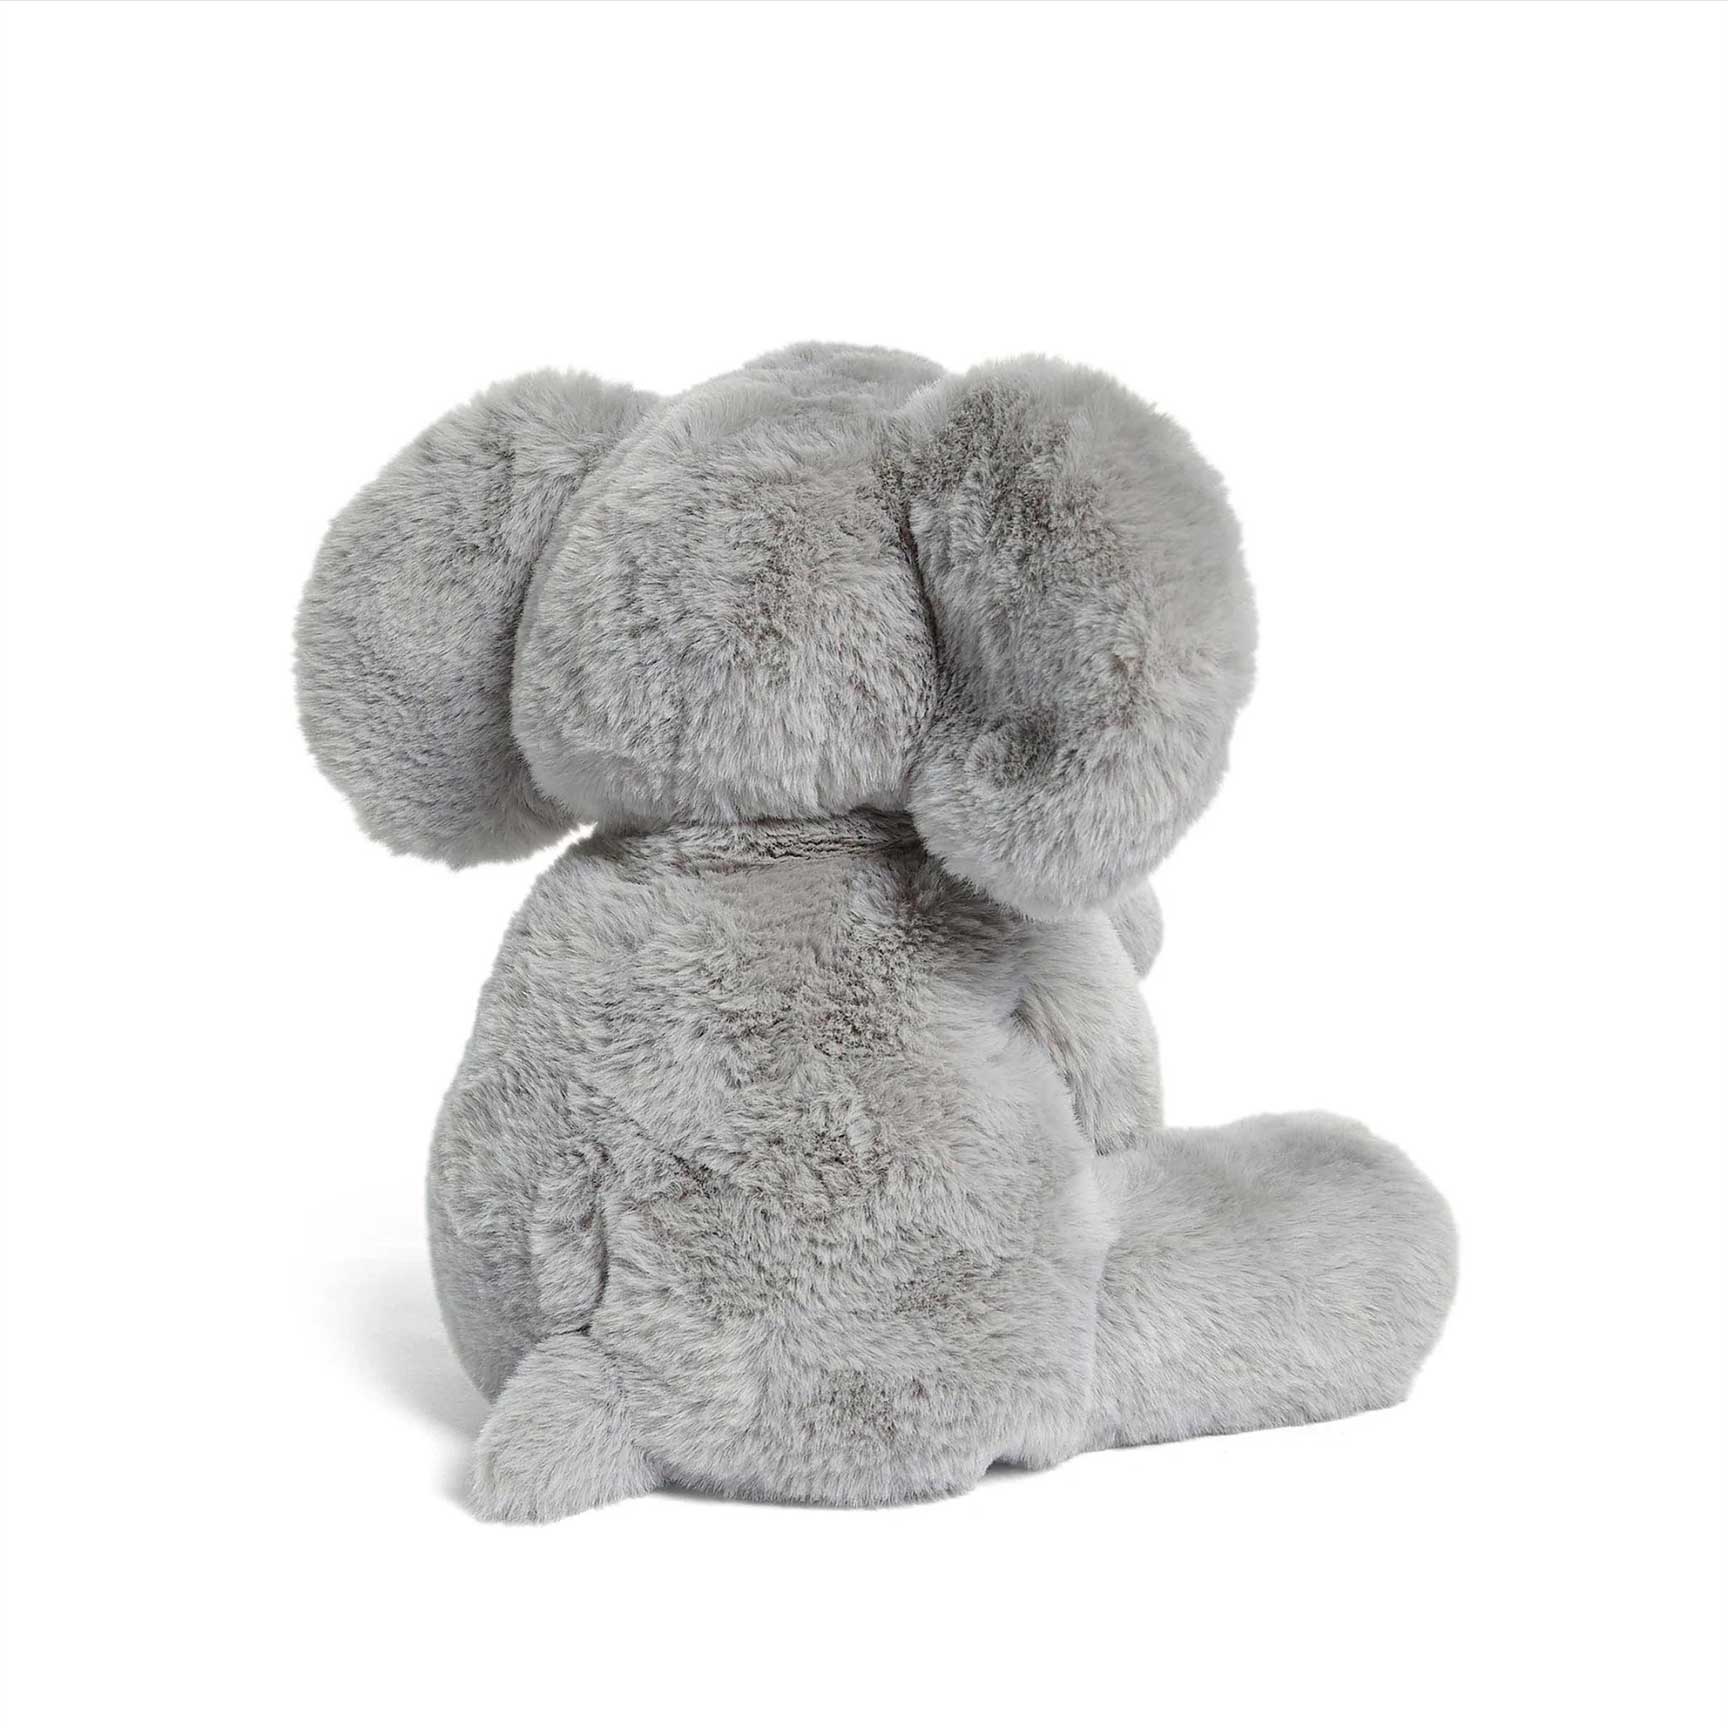 Mamas & Papas soft animals Mamas & Papas Soft Toy Welcome to the World - Archie Elephant 4855WW201